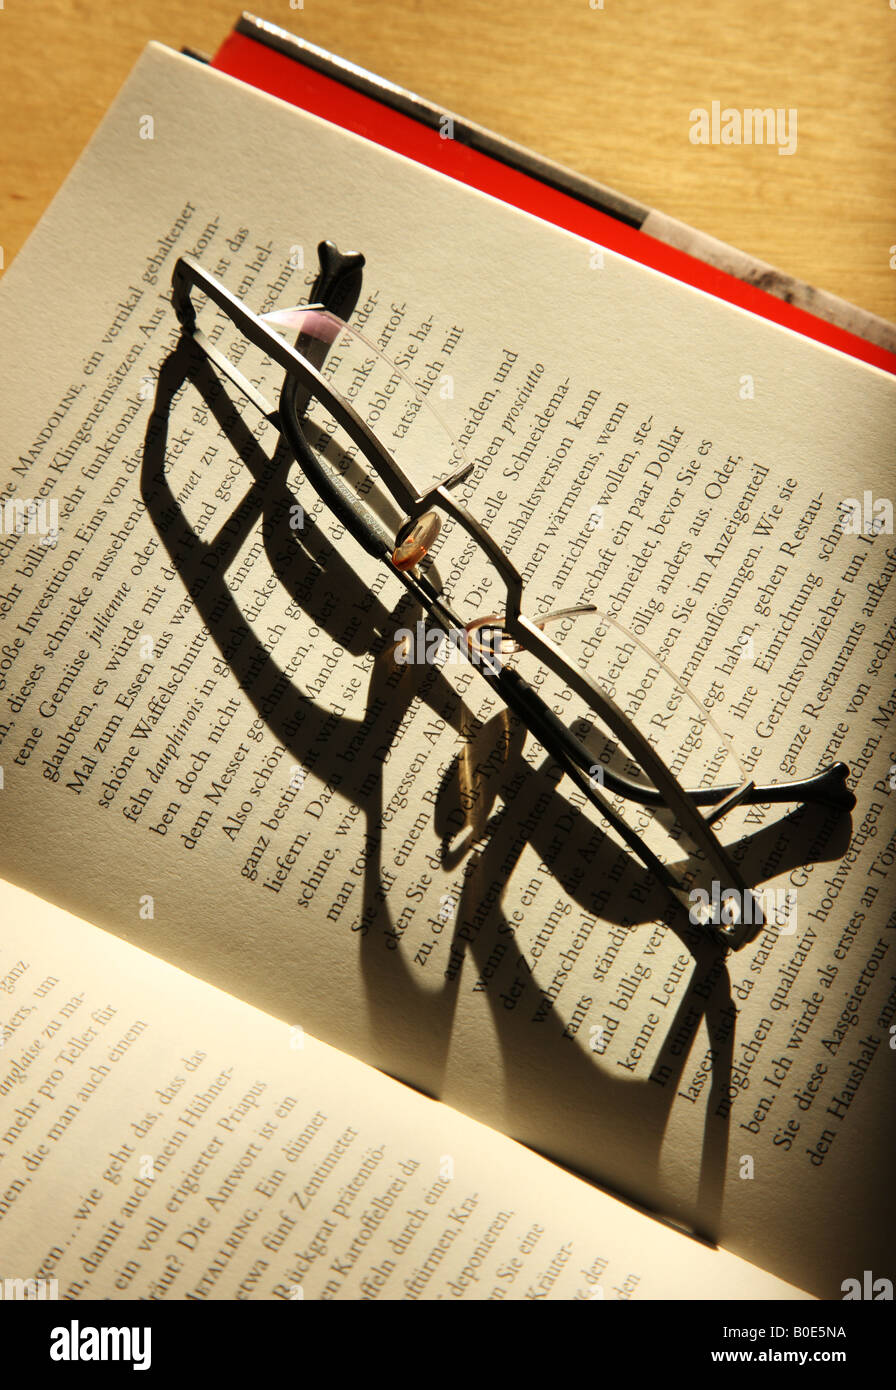 Gafas de lectura sobre un libro abierto Foto de stock